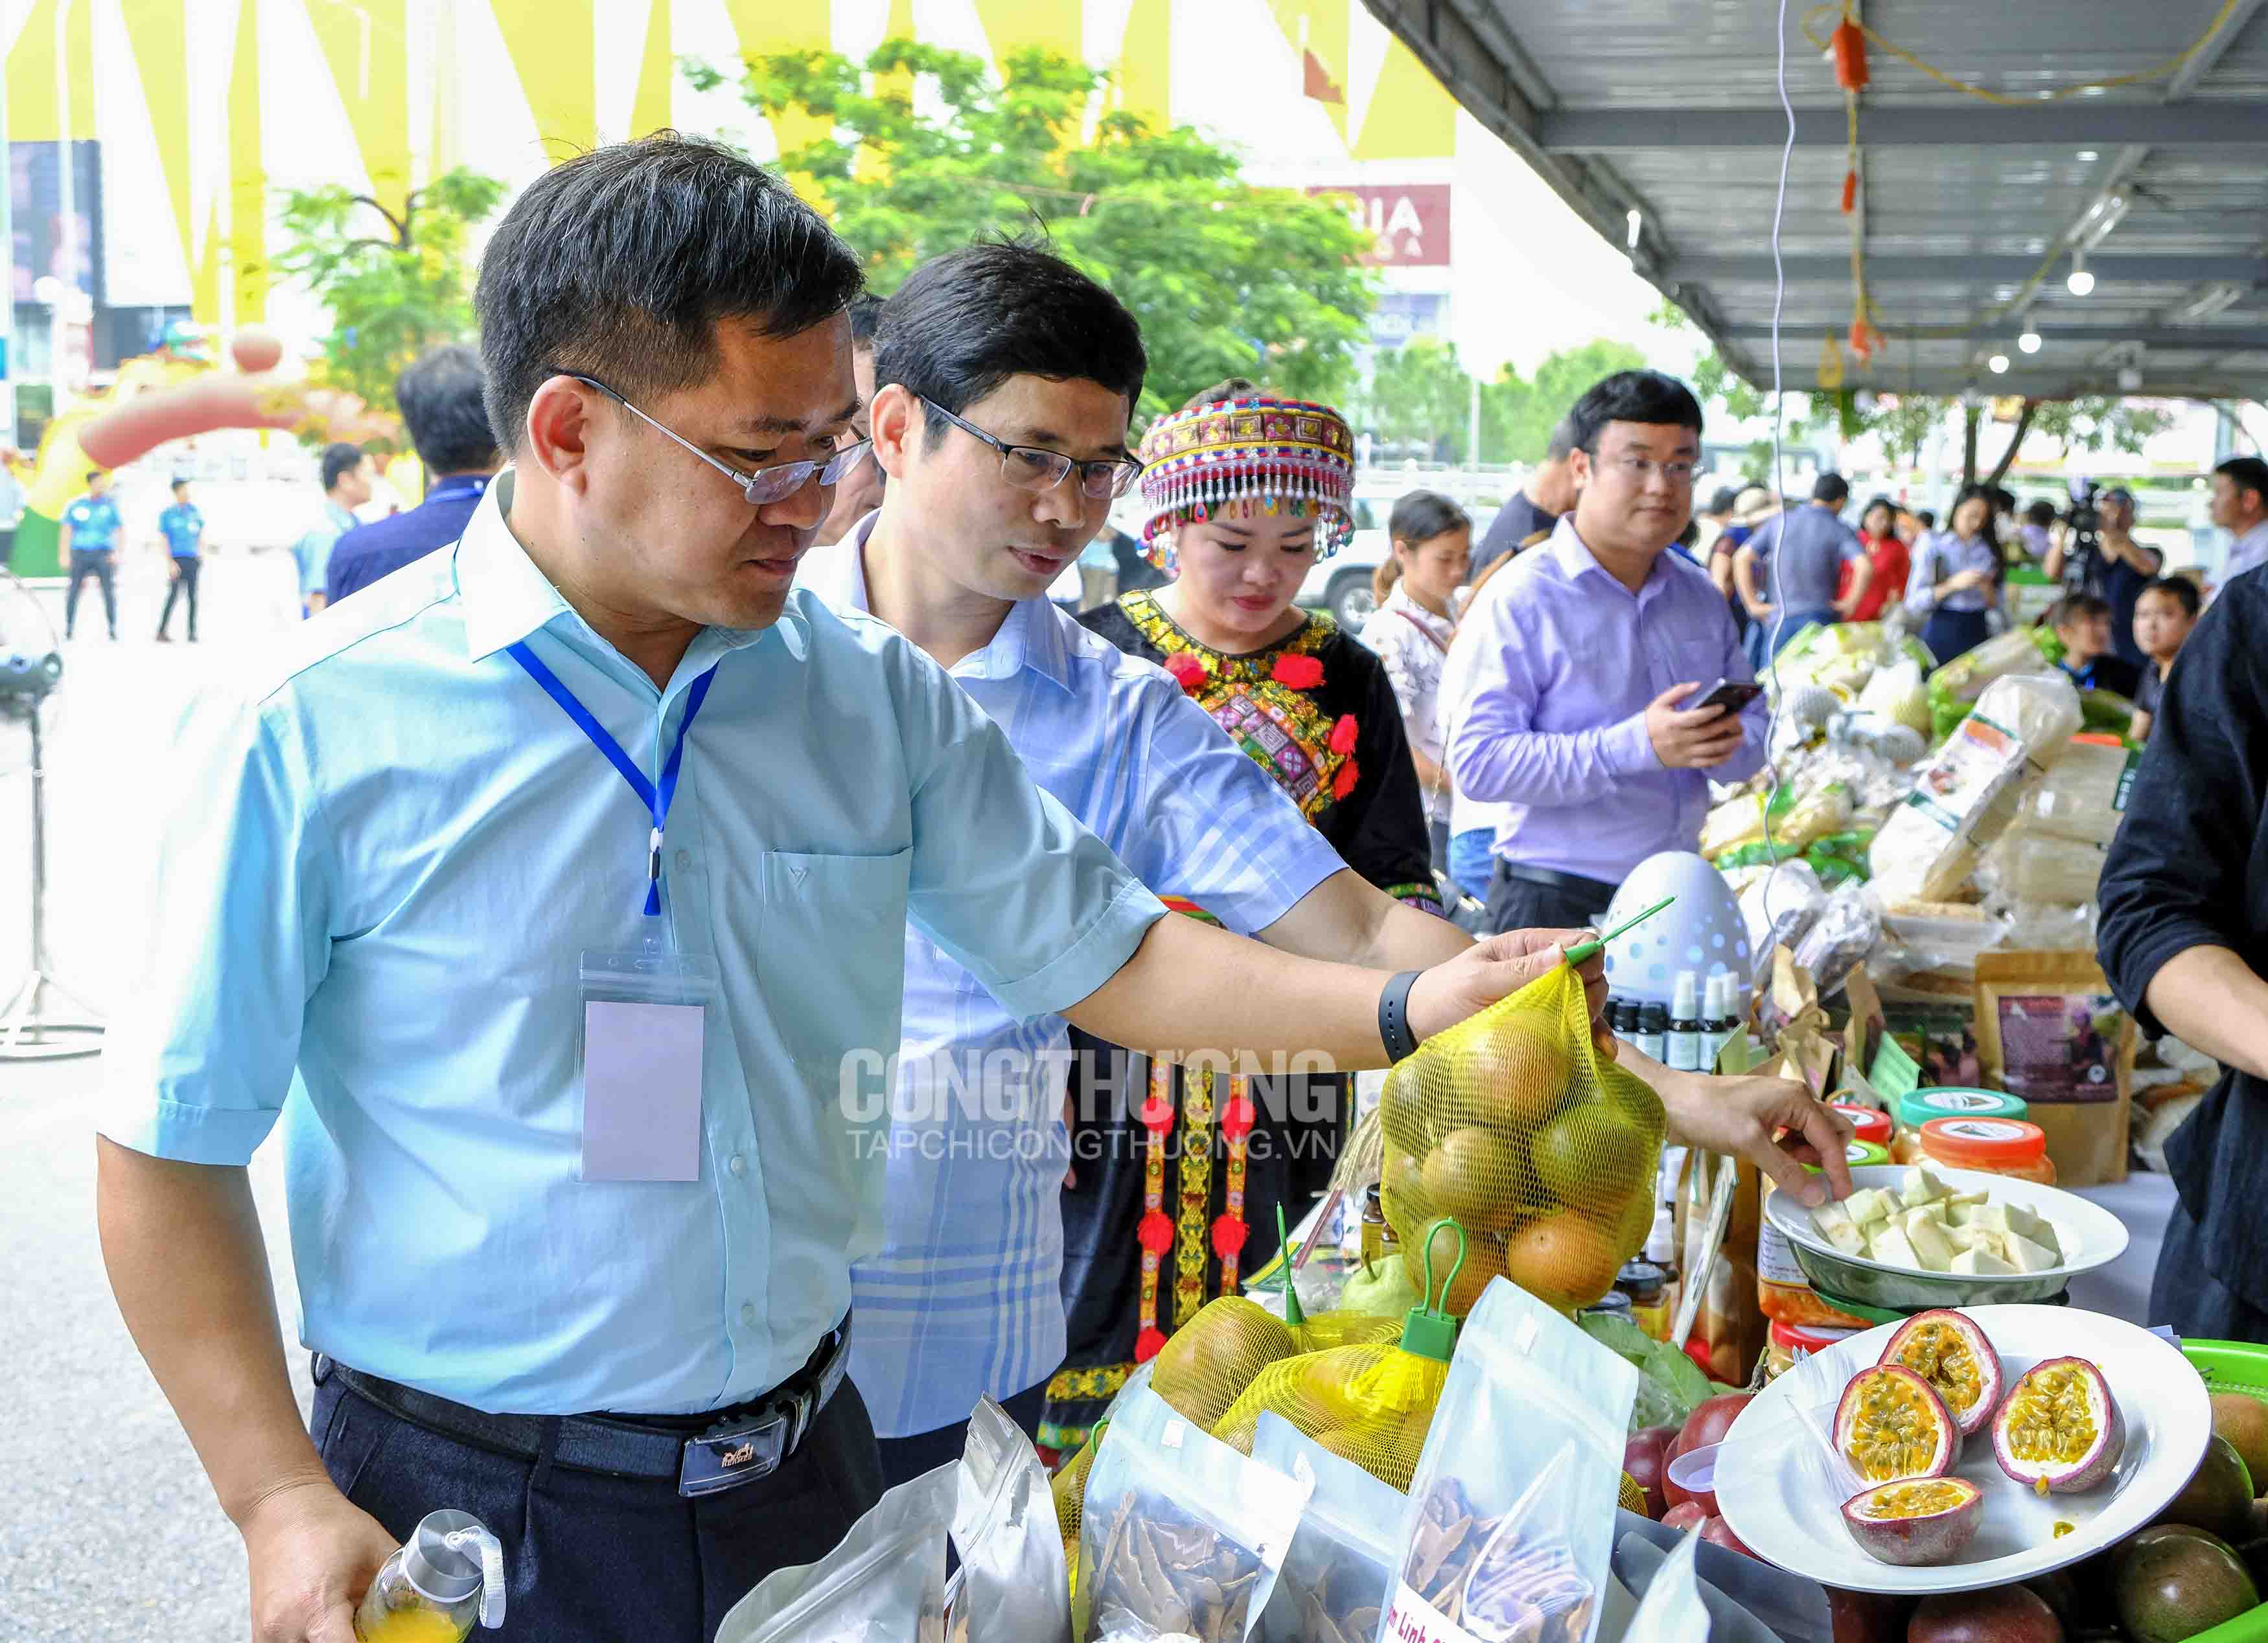 Tuần lễ giới thiệu Hồng không hạt và các sản phẩm nông sản sạch tỉnh Bắc Kạn năm 2019 tại Big C Thăng Long